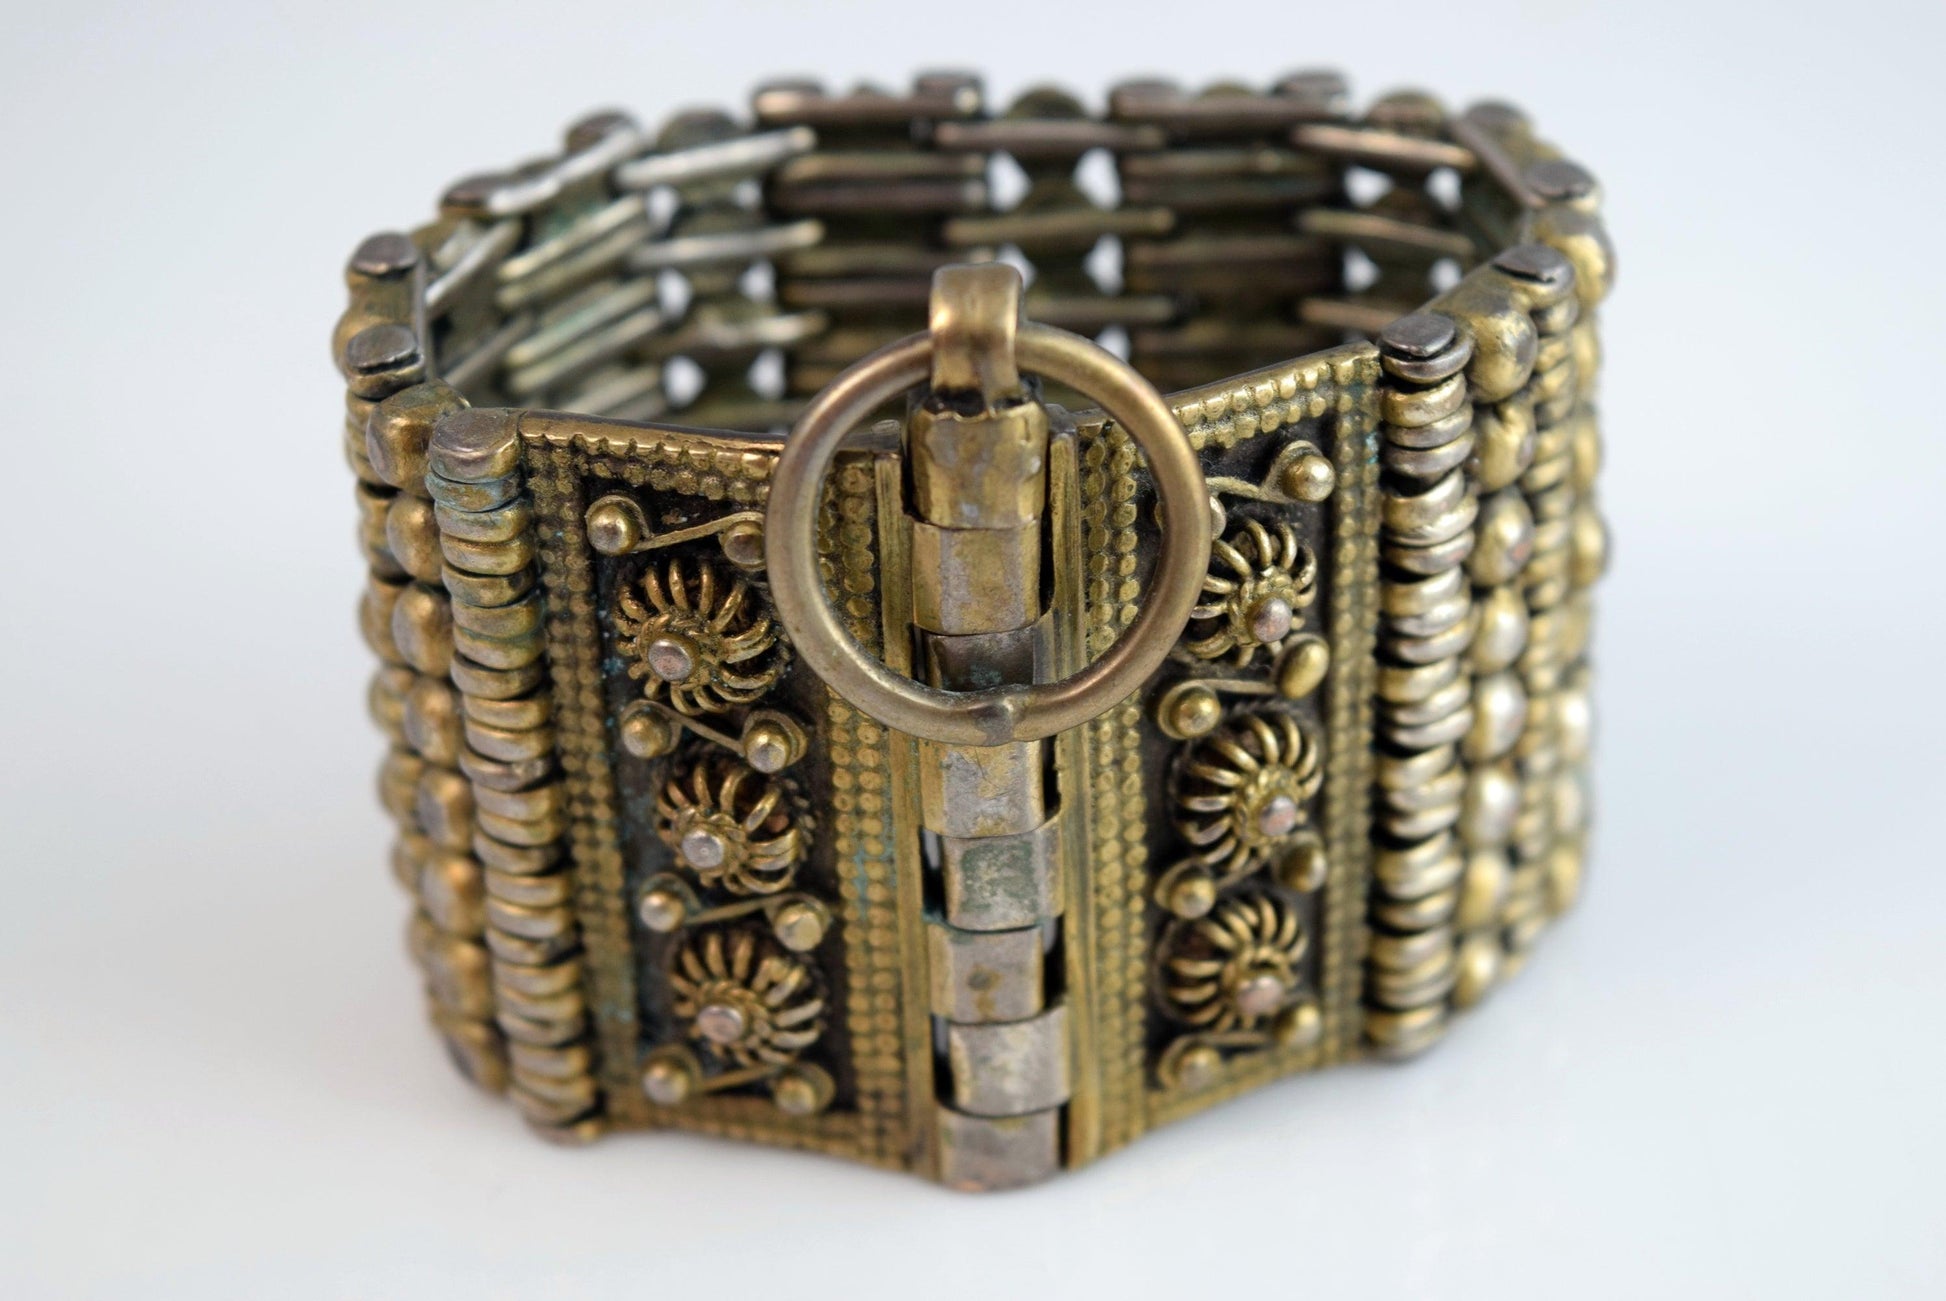 Palestinian bracelet